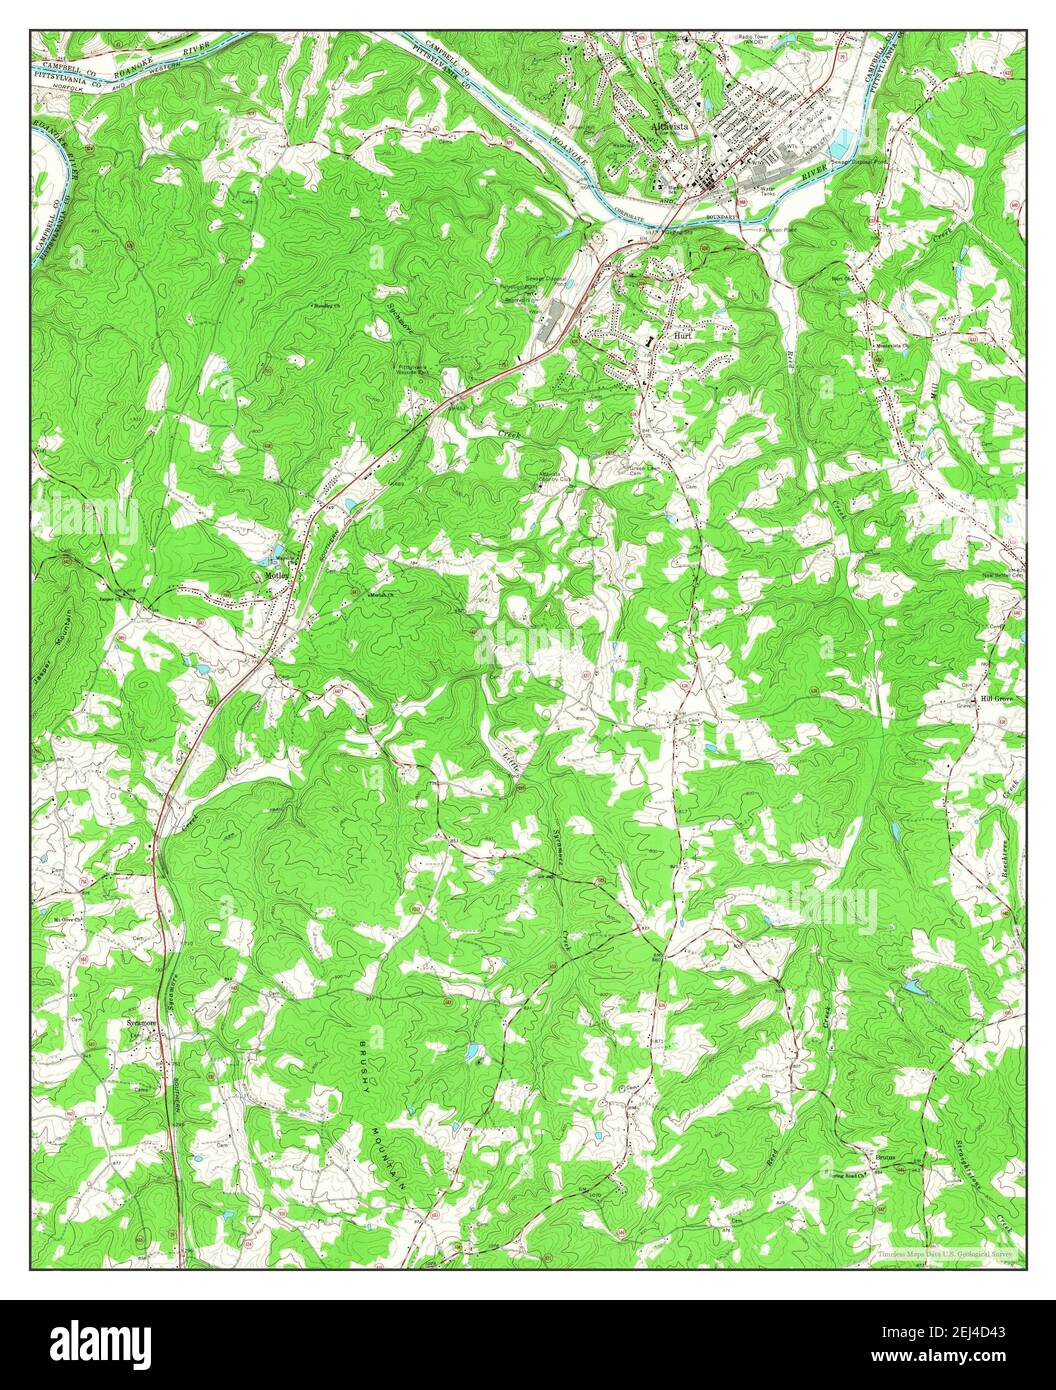 Altavista, Virginia, Karte 1966, 1:24000, Vereinigte Staaten von Amerika von Timeless Maps, Daten U.S. Geological Survey Stockfoto